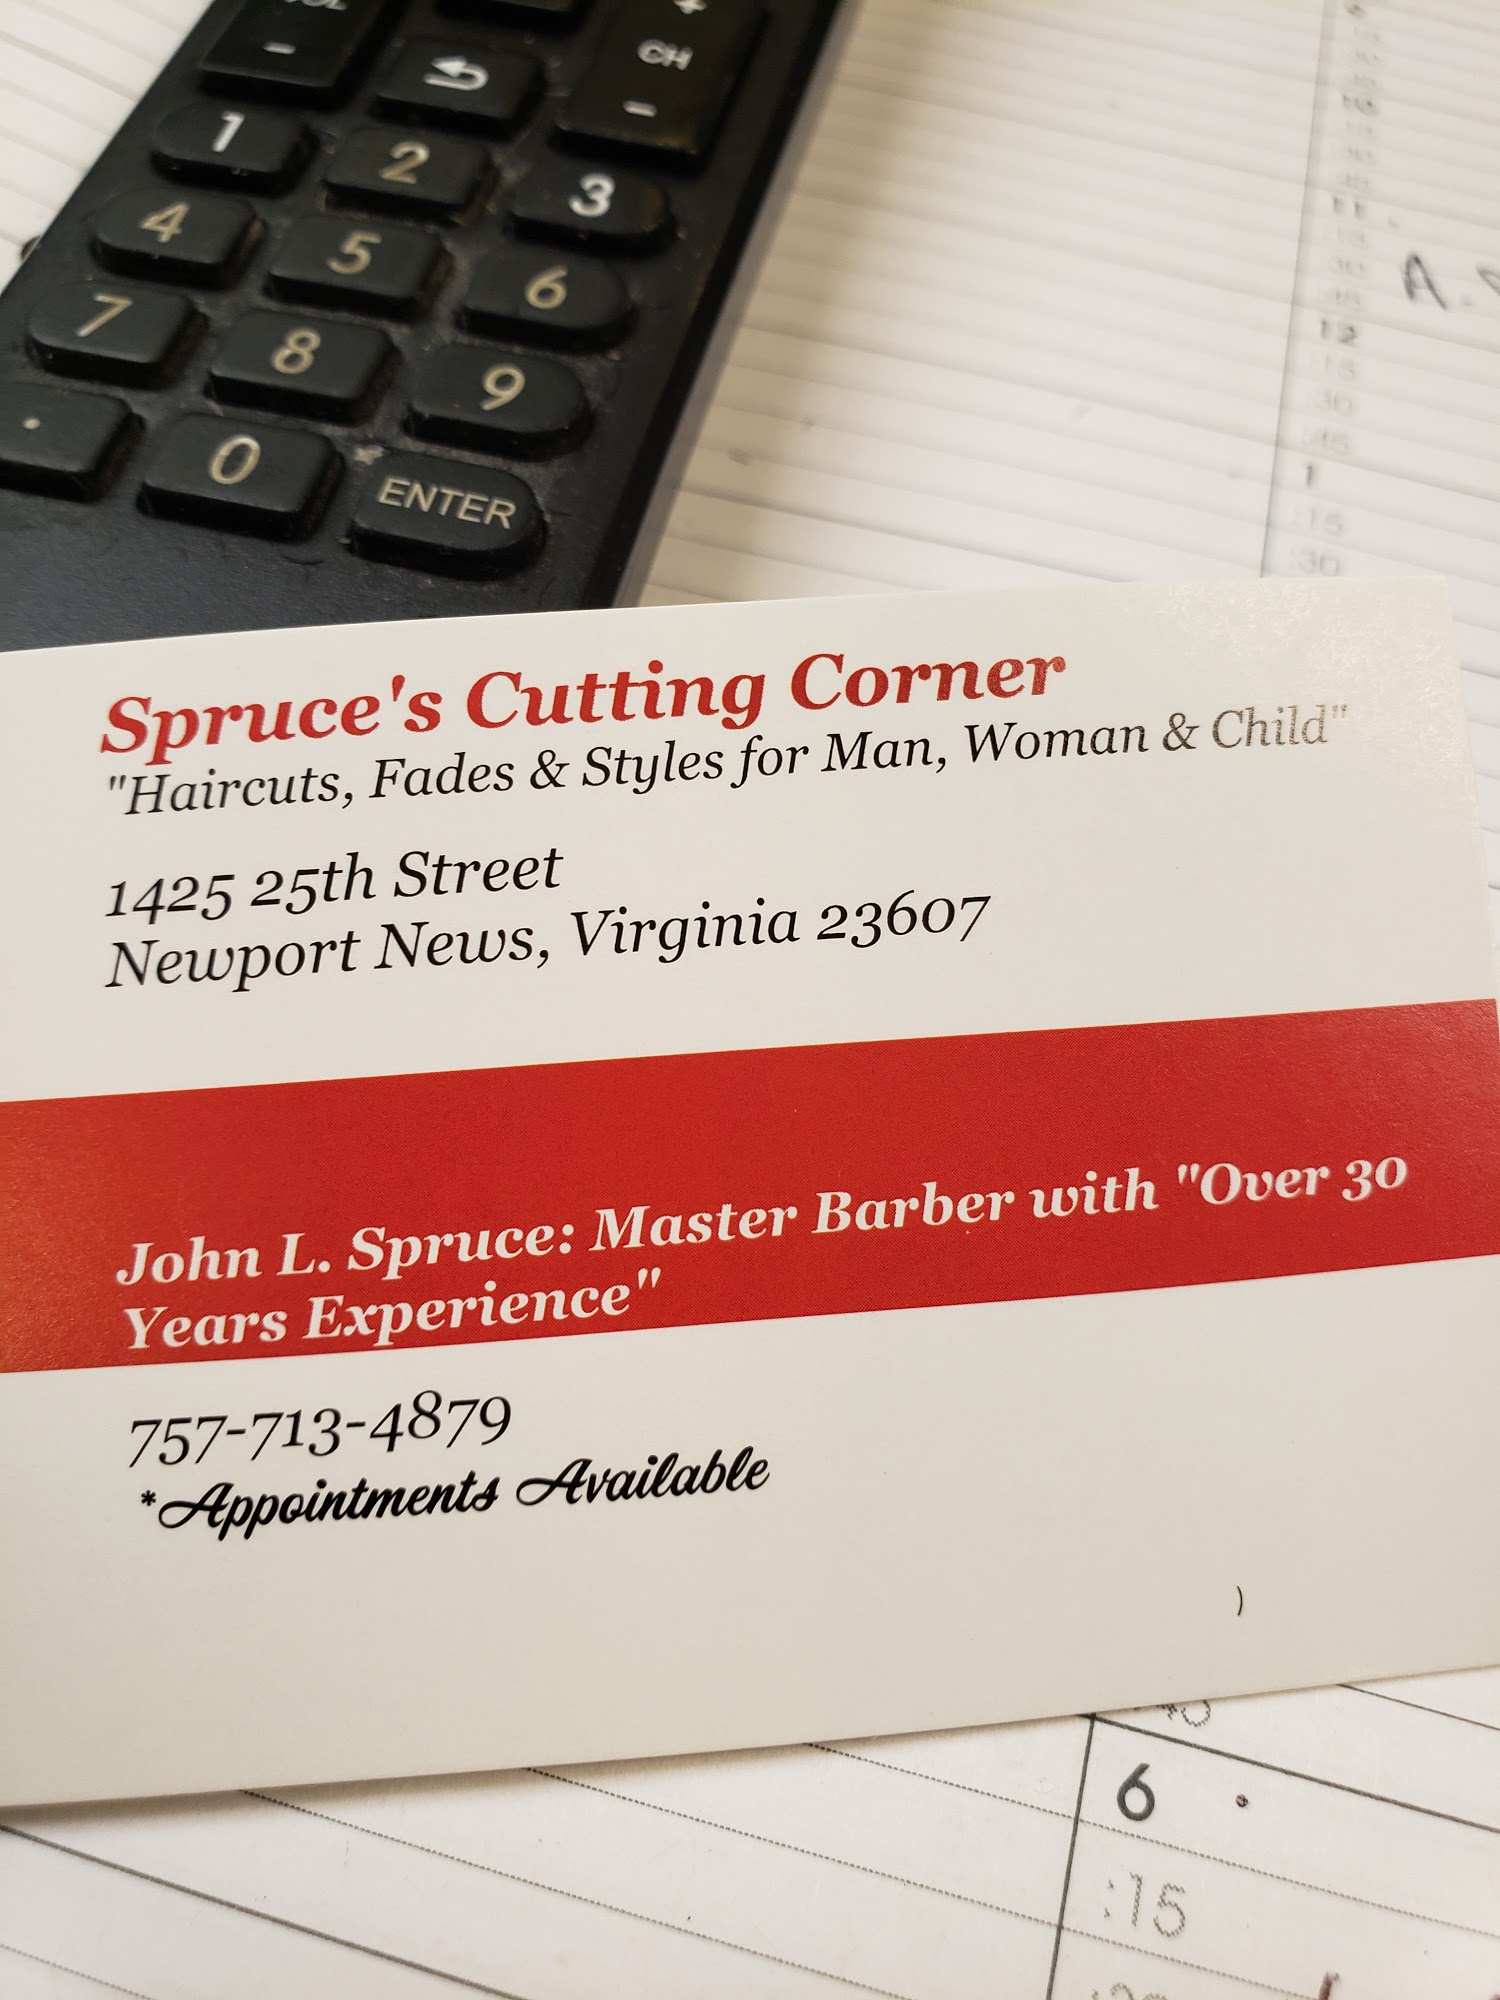 Spruce's Cutting Corner